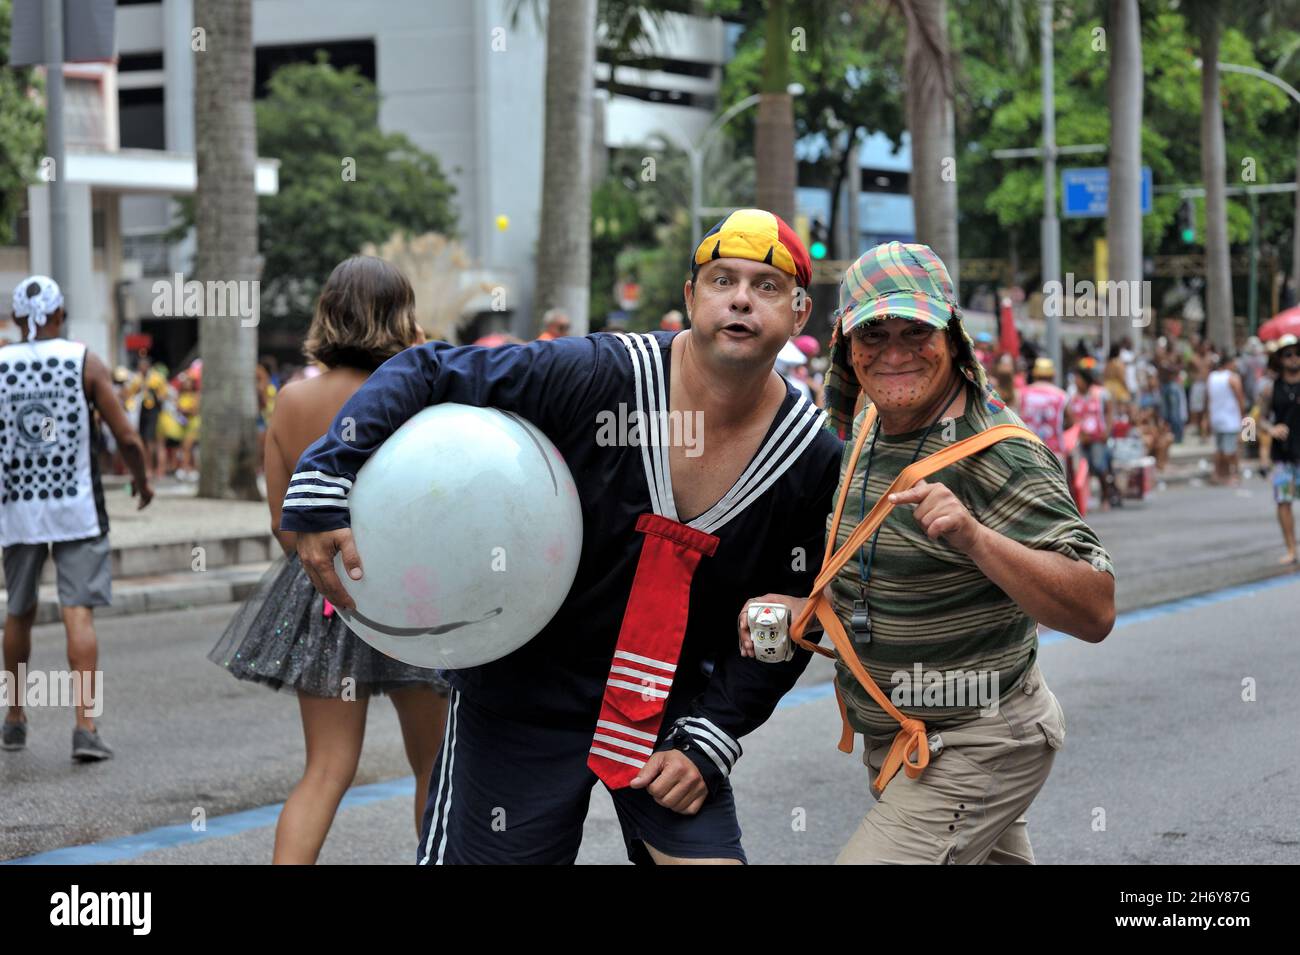 Brésil - 22 février 2020: Des fêtards déguisés comme El Chavo télévision sitcom personnages se produire lors d'une fête de rue Carnaval tenue à Rio de Janeiro Banque D'Images